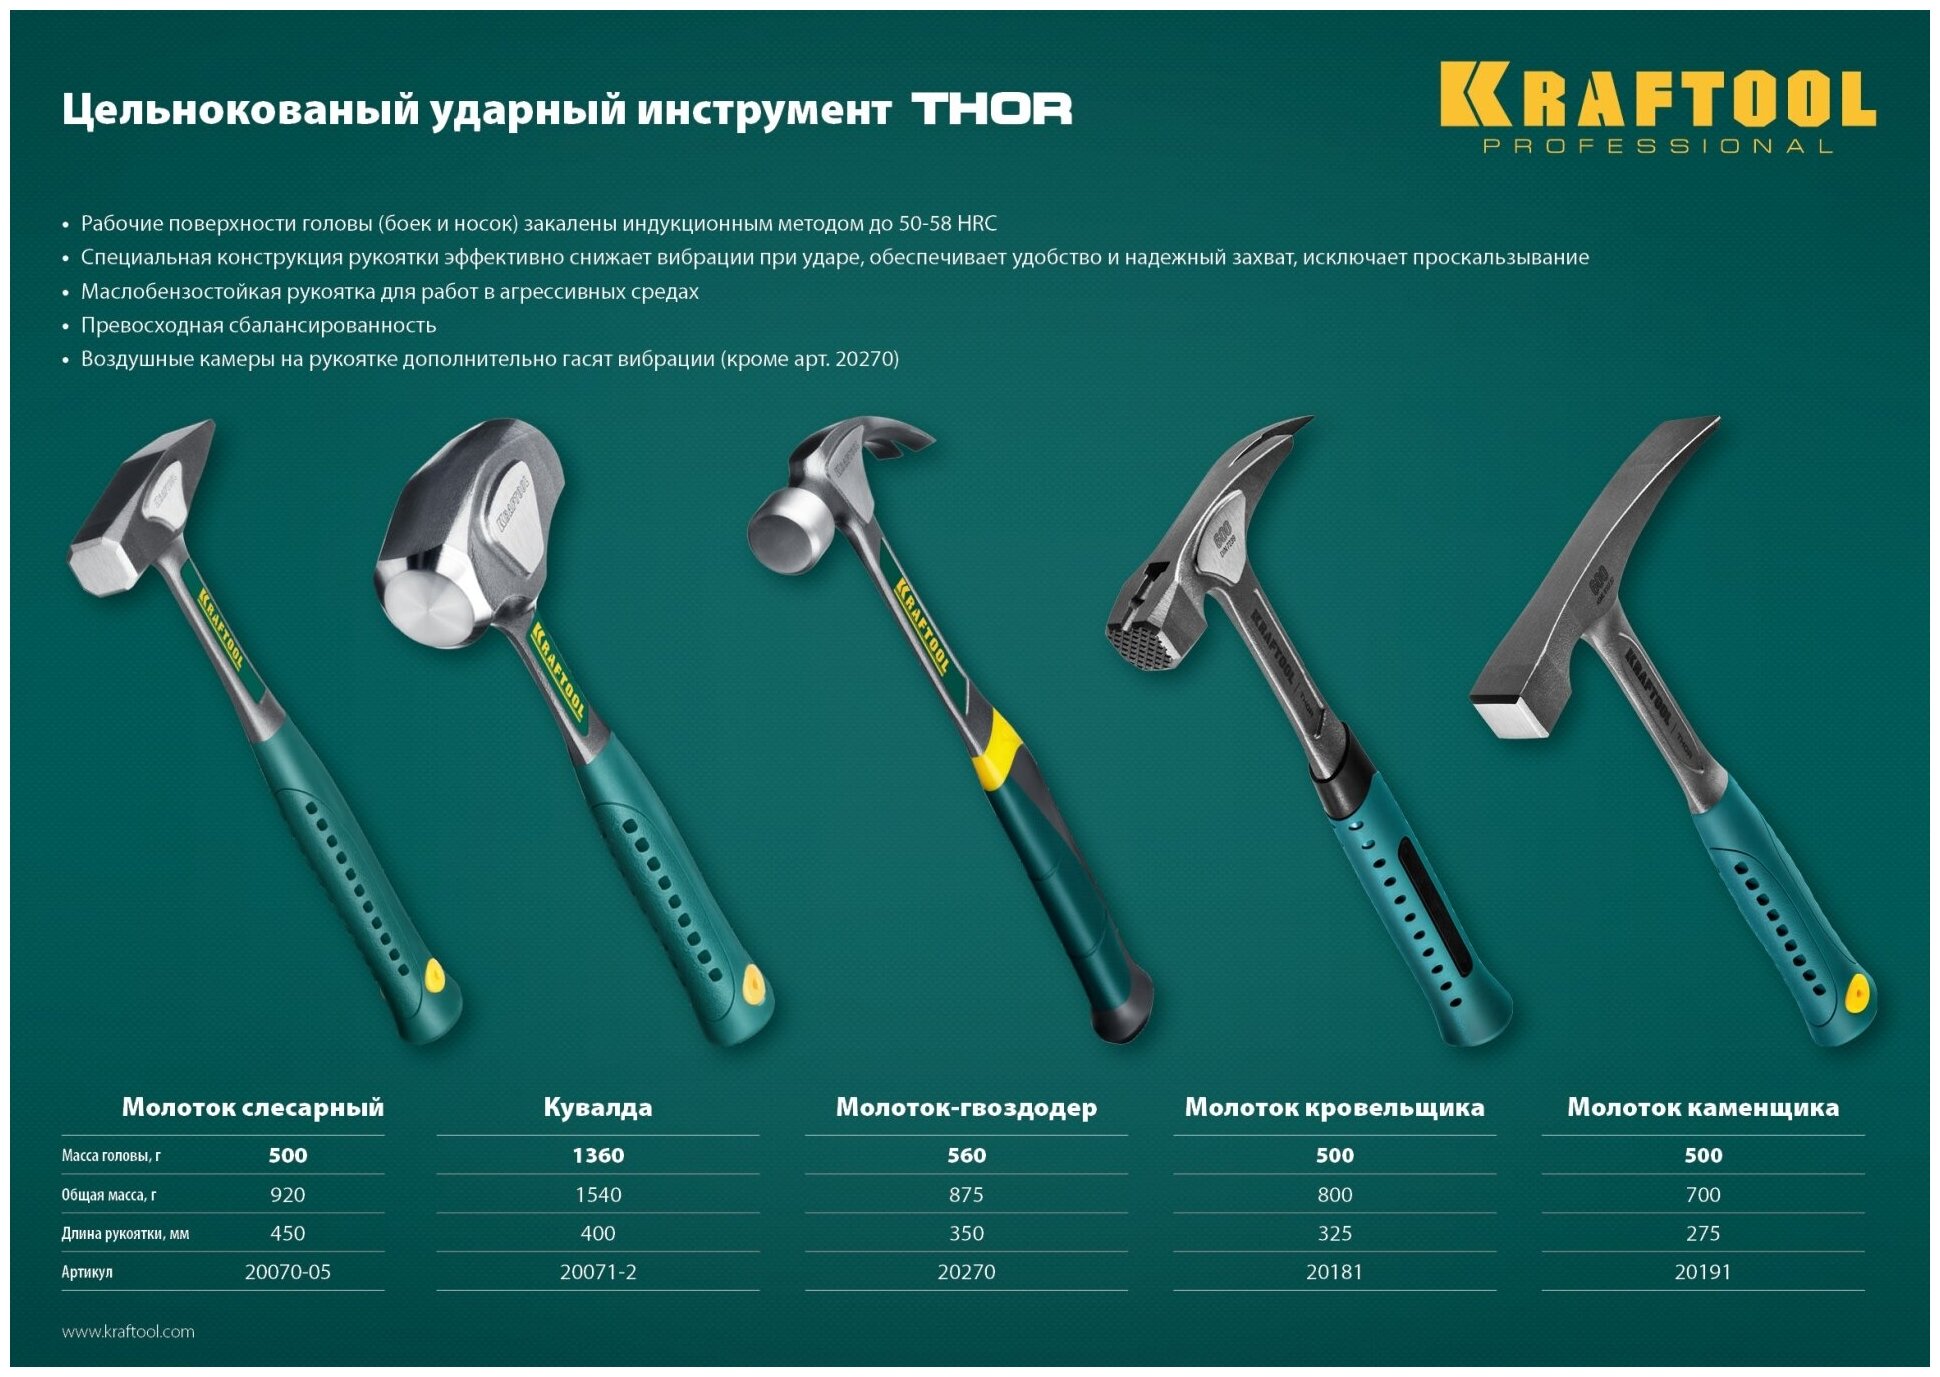 KRAFTOOL Thor 600 г, Цельнокованый молоток каменщика (20191)